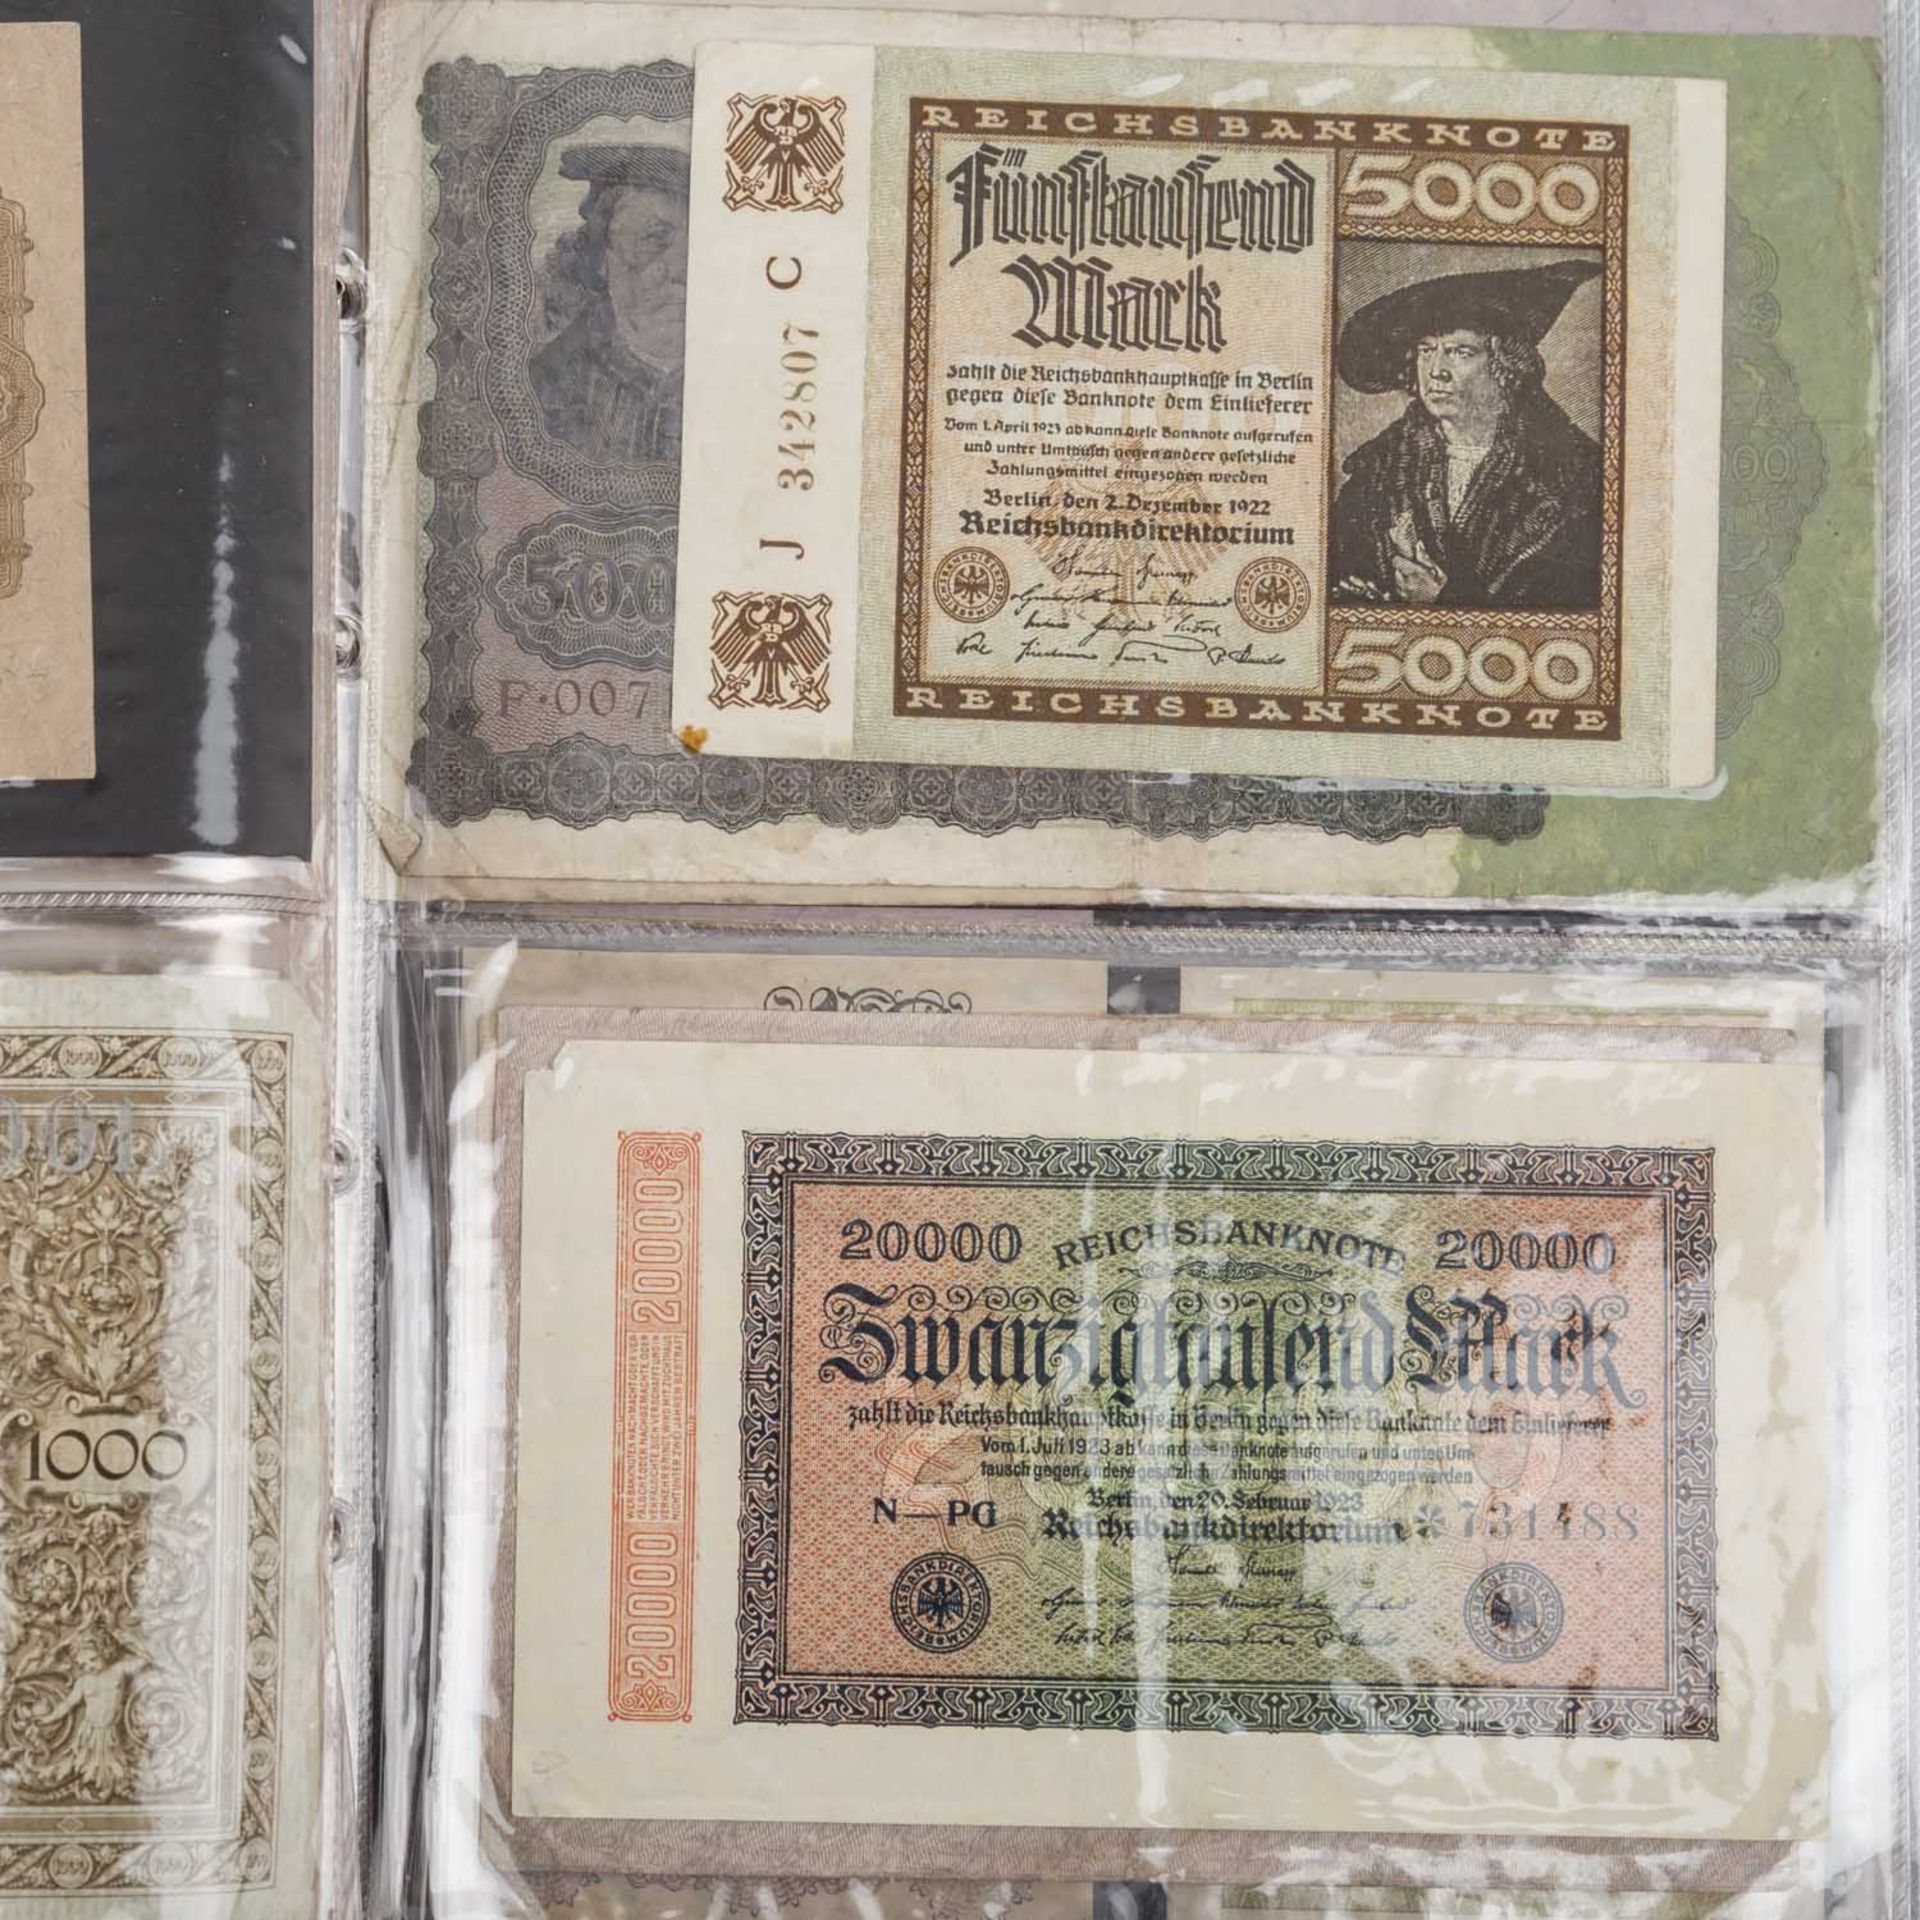 2 Alben mit Münzen und Banknoten –darunter BRD 5 und 10 DM, versch. Jahrgänge, ca. 390 DM nominal, - Bild 7 aus 7